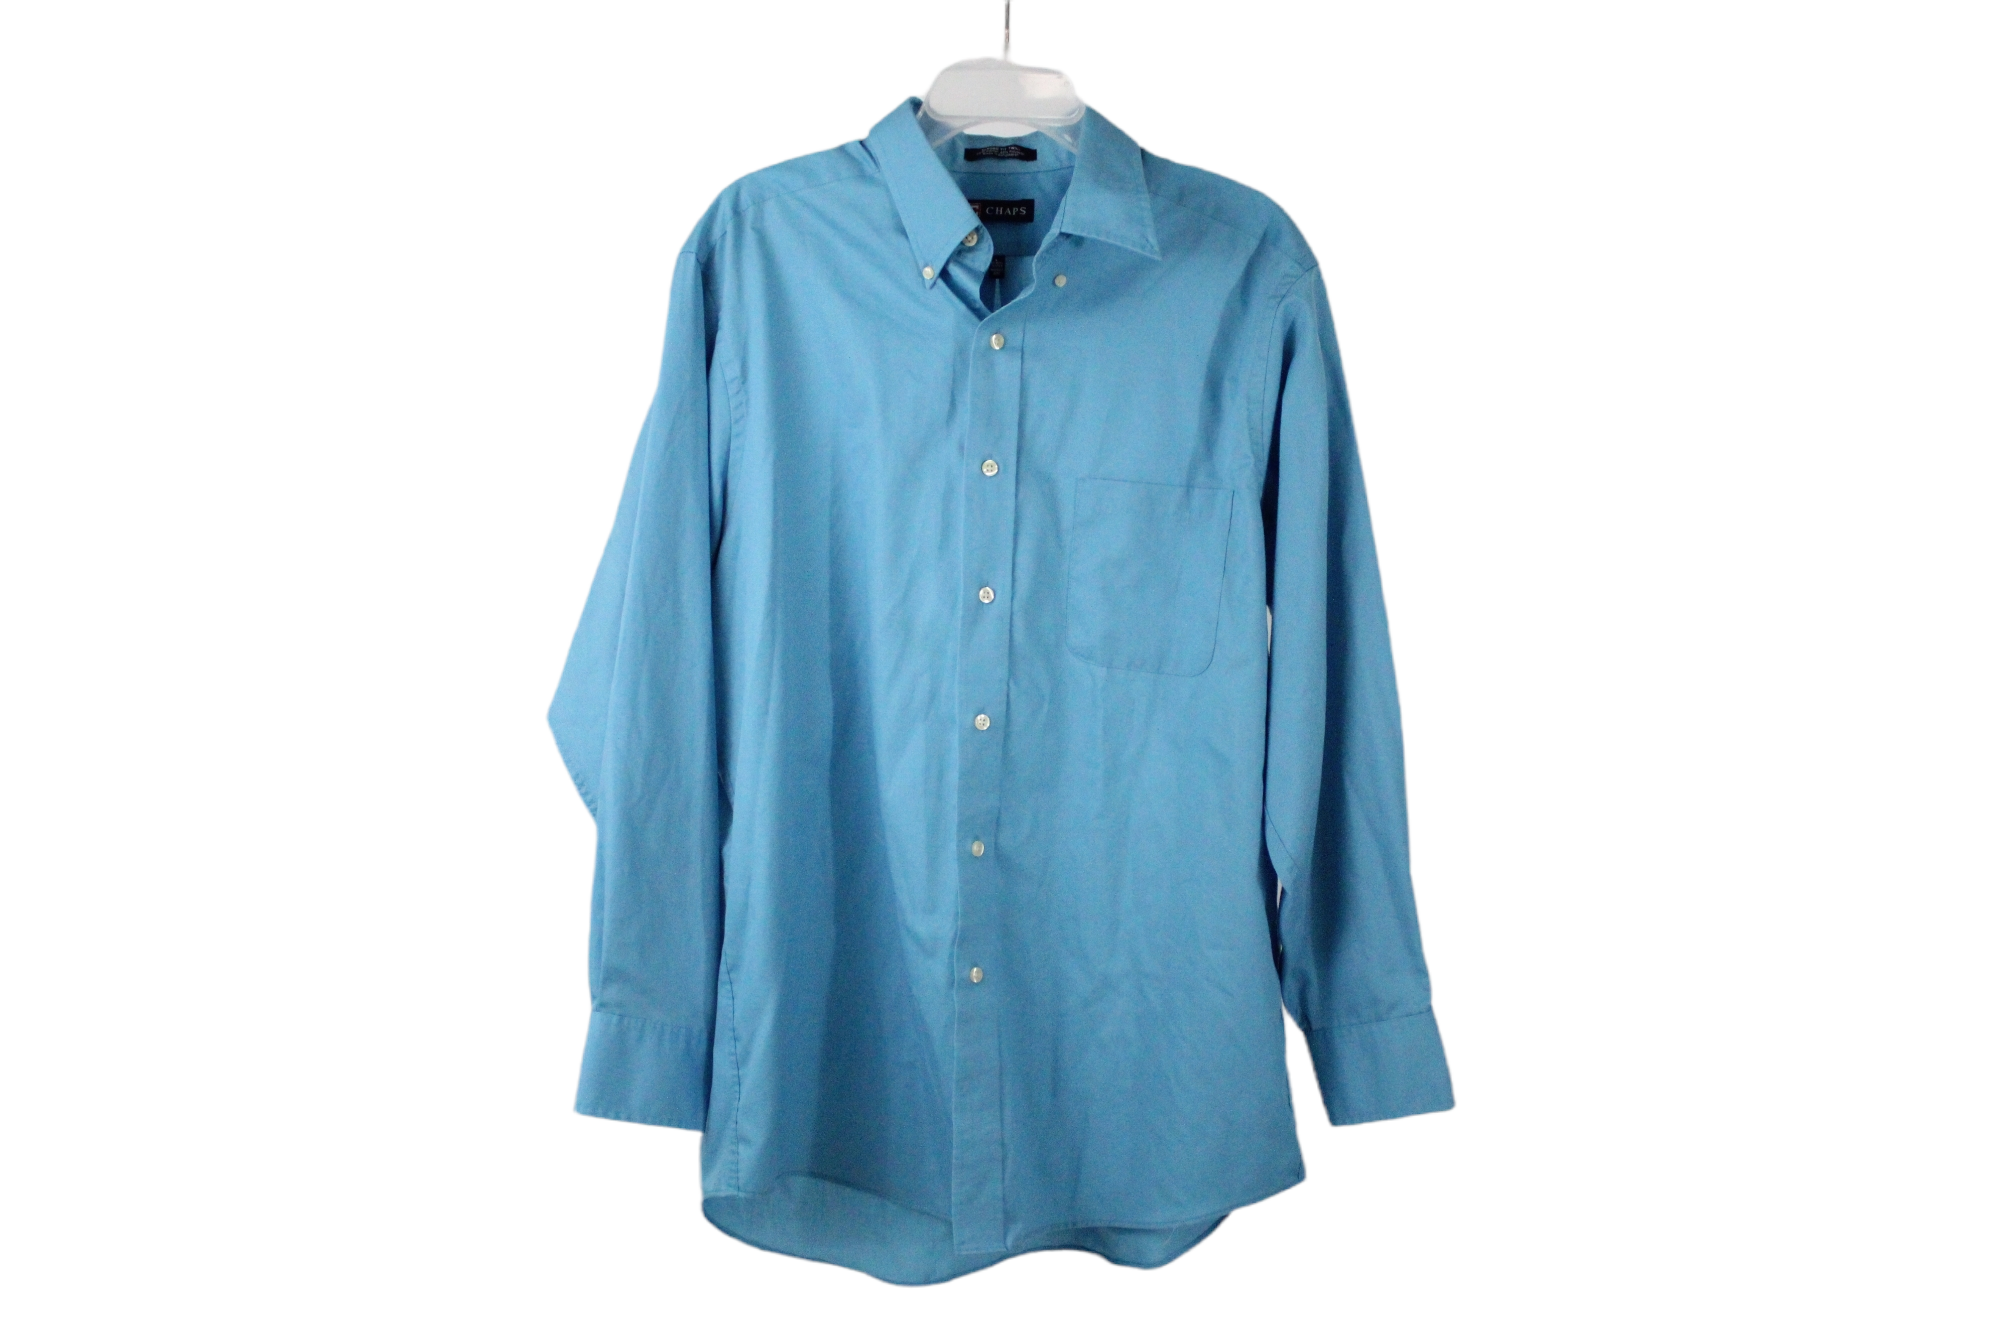 Chaps Classic Fit Twill Blue Shirt | L 16/16 1/2 32/33